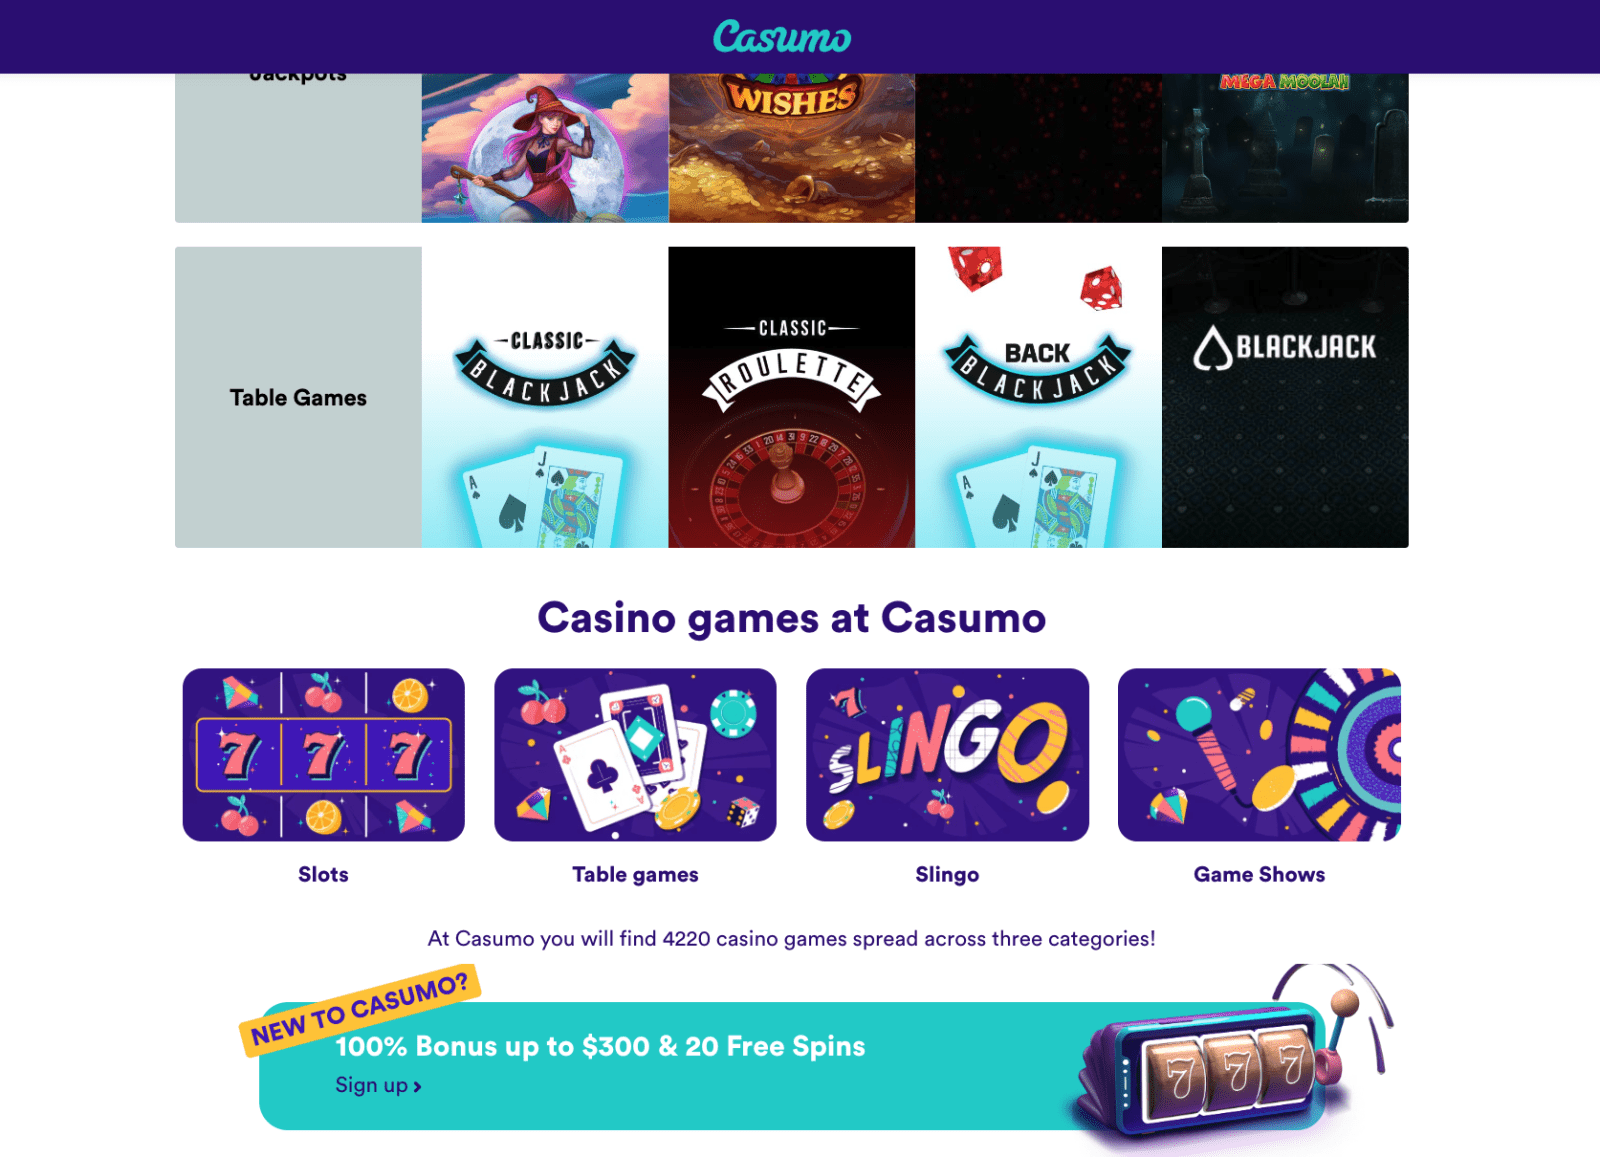 Casumo Casinospil